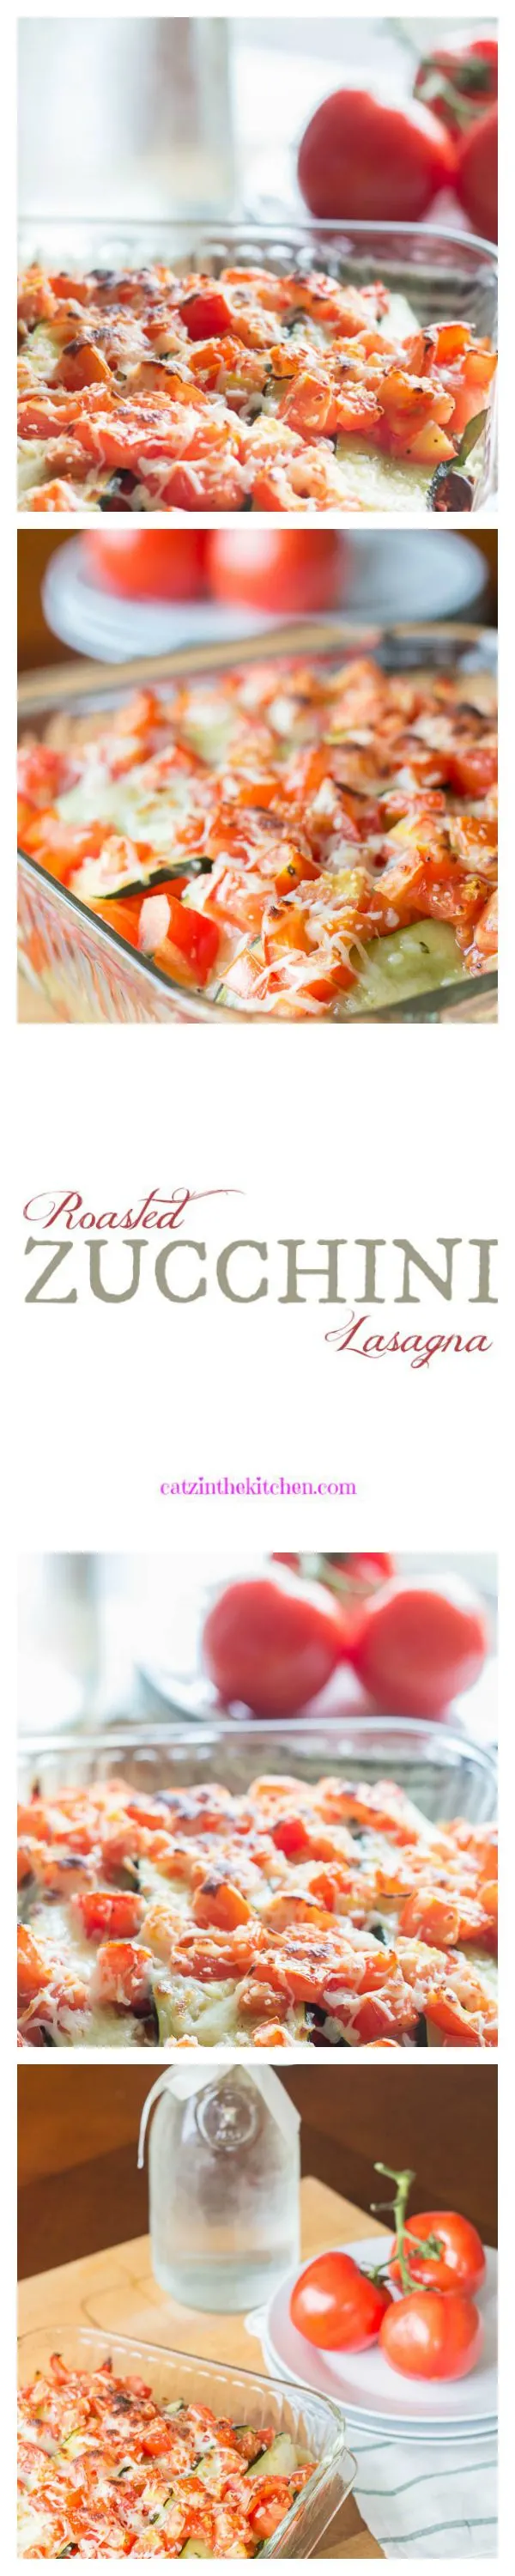 Roasted Zucchini Lasagna | Catz in the Kitchen | catzinthekitchen.com | #zucchini